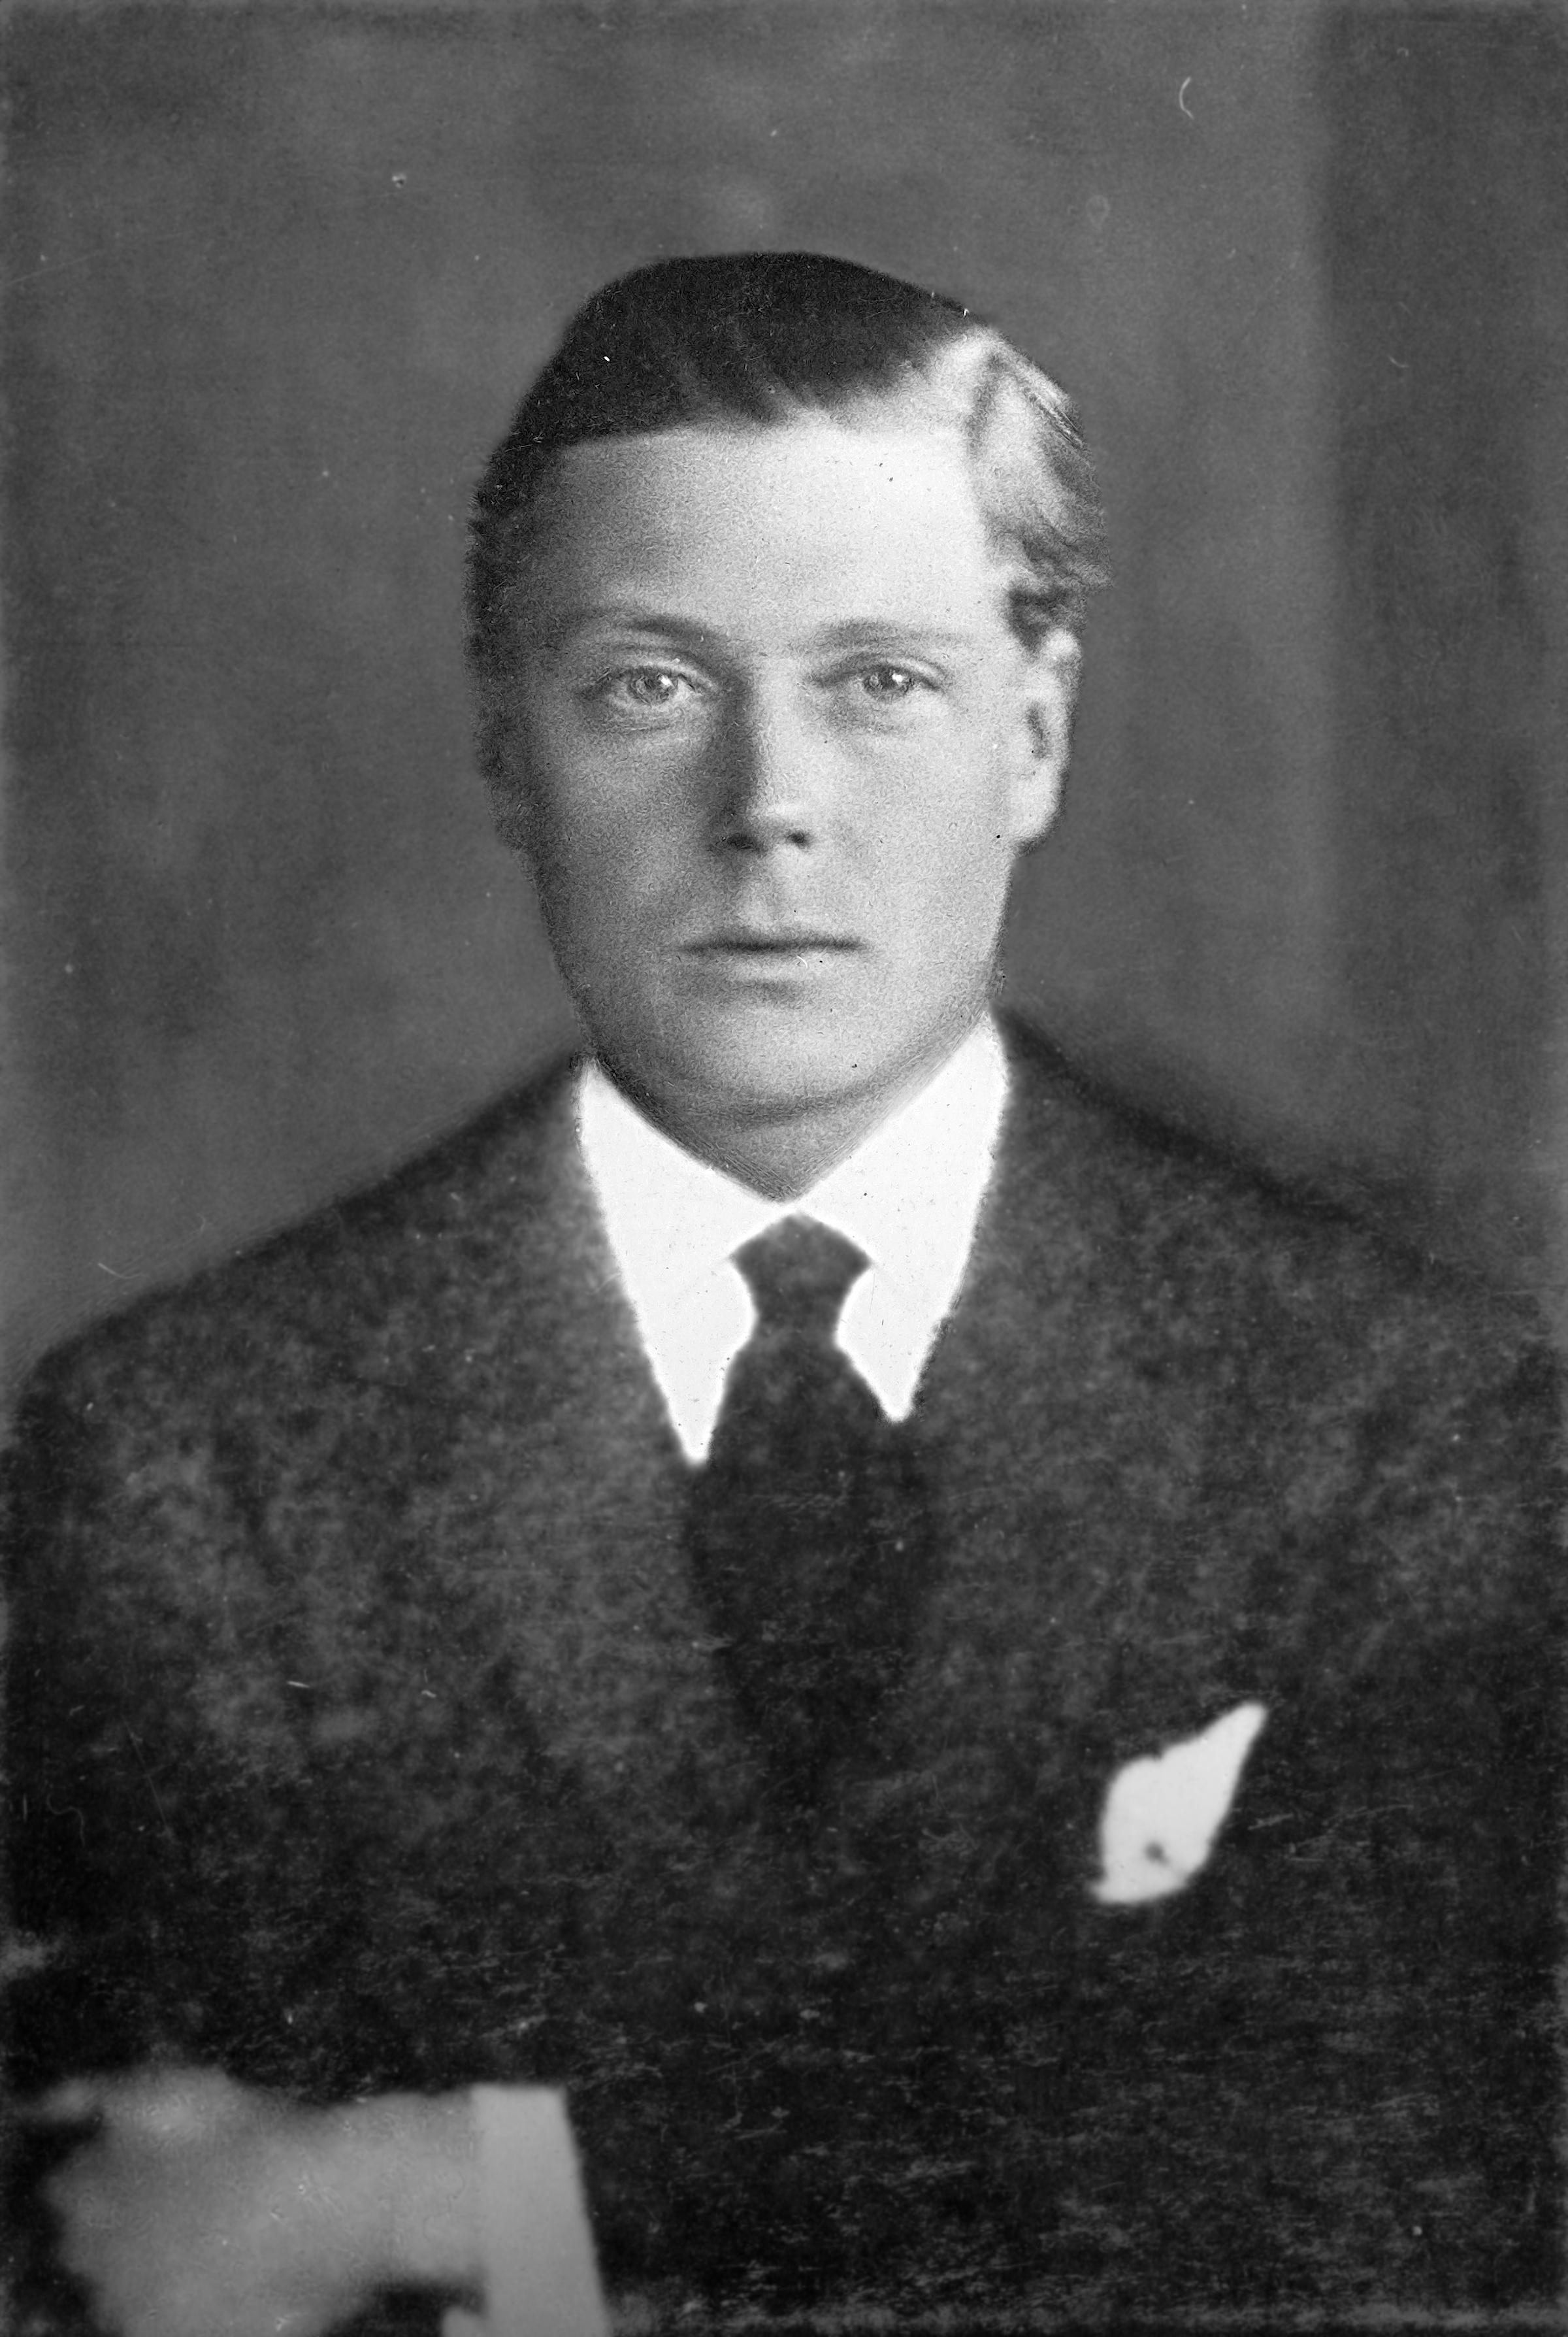 prince edward of england 1930